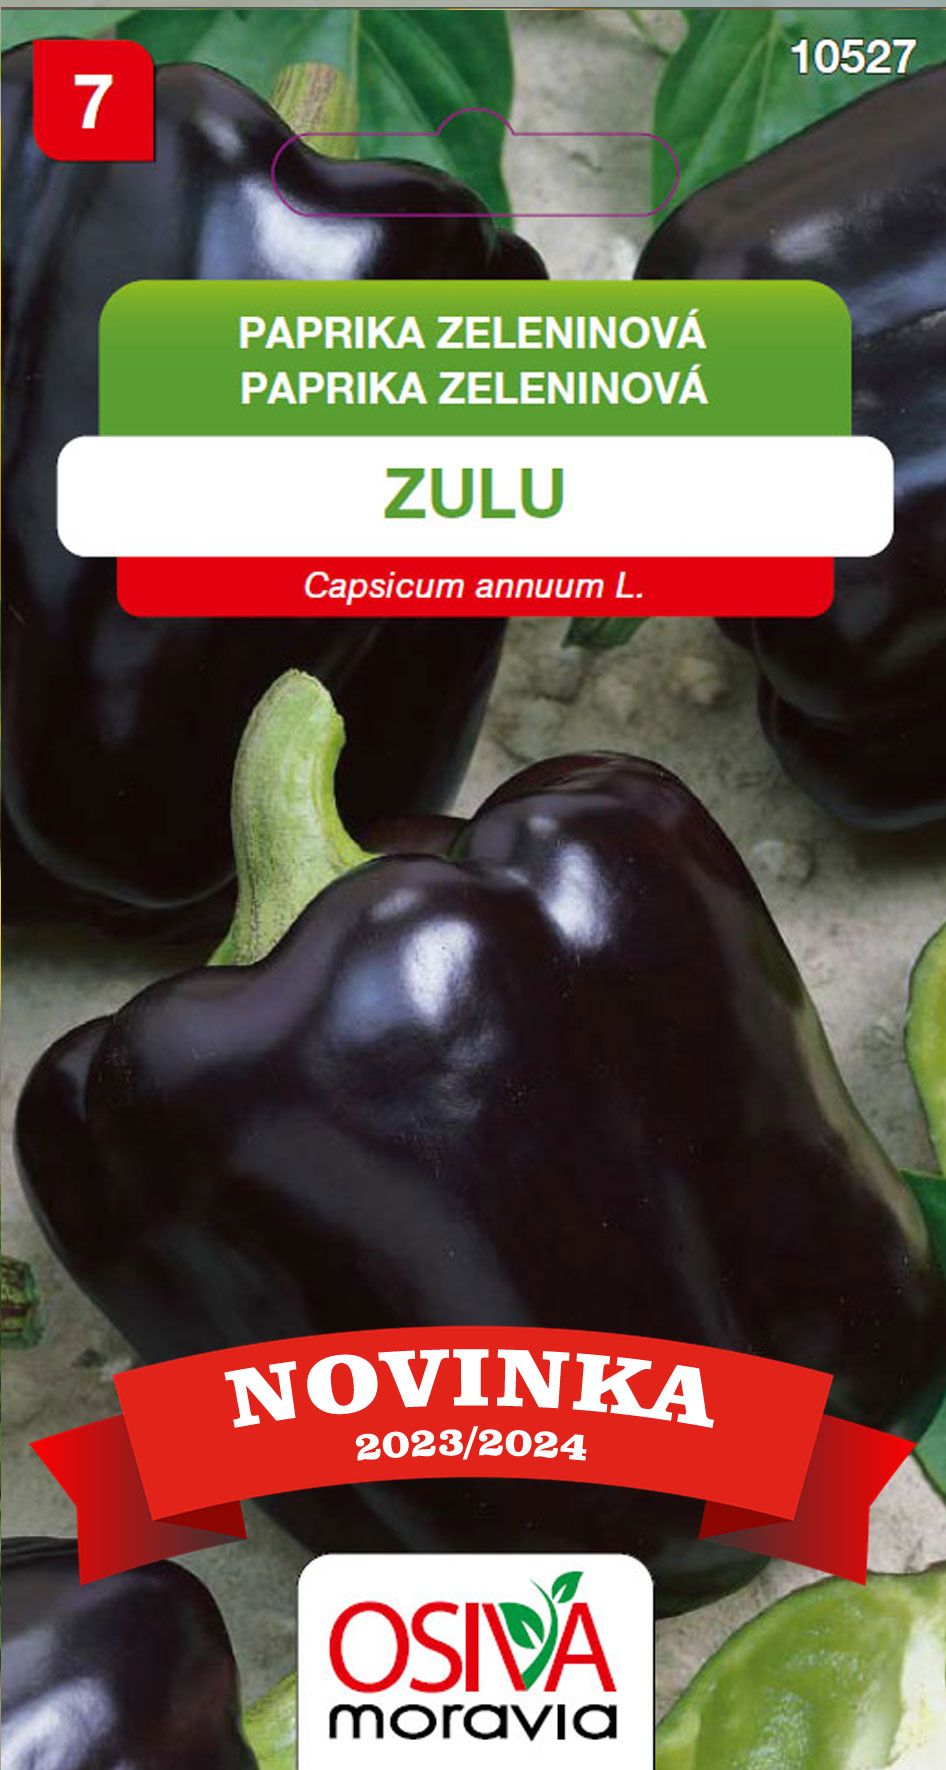 Paprika zeleninová - sladká - Zulu